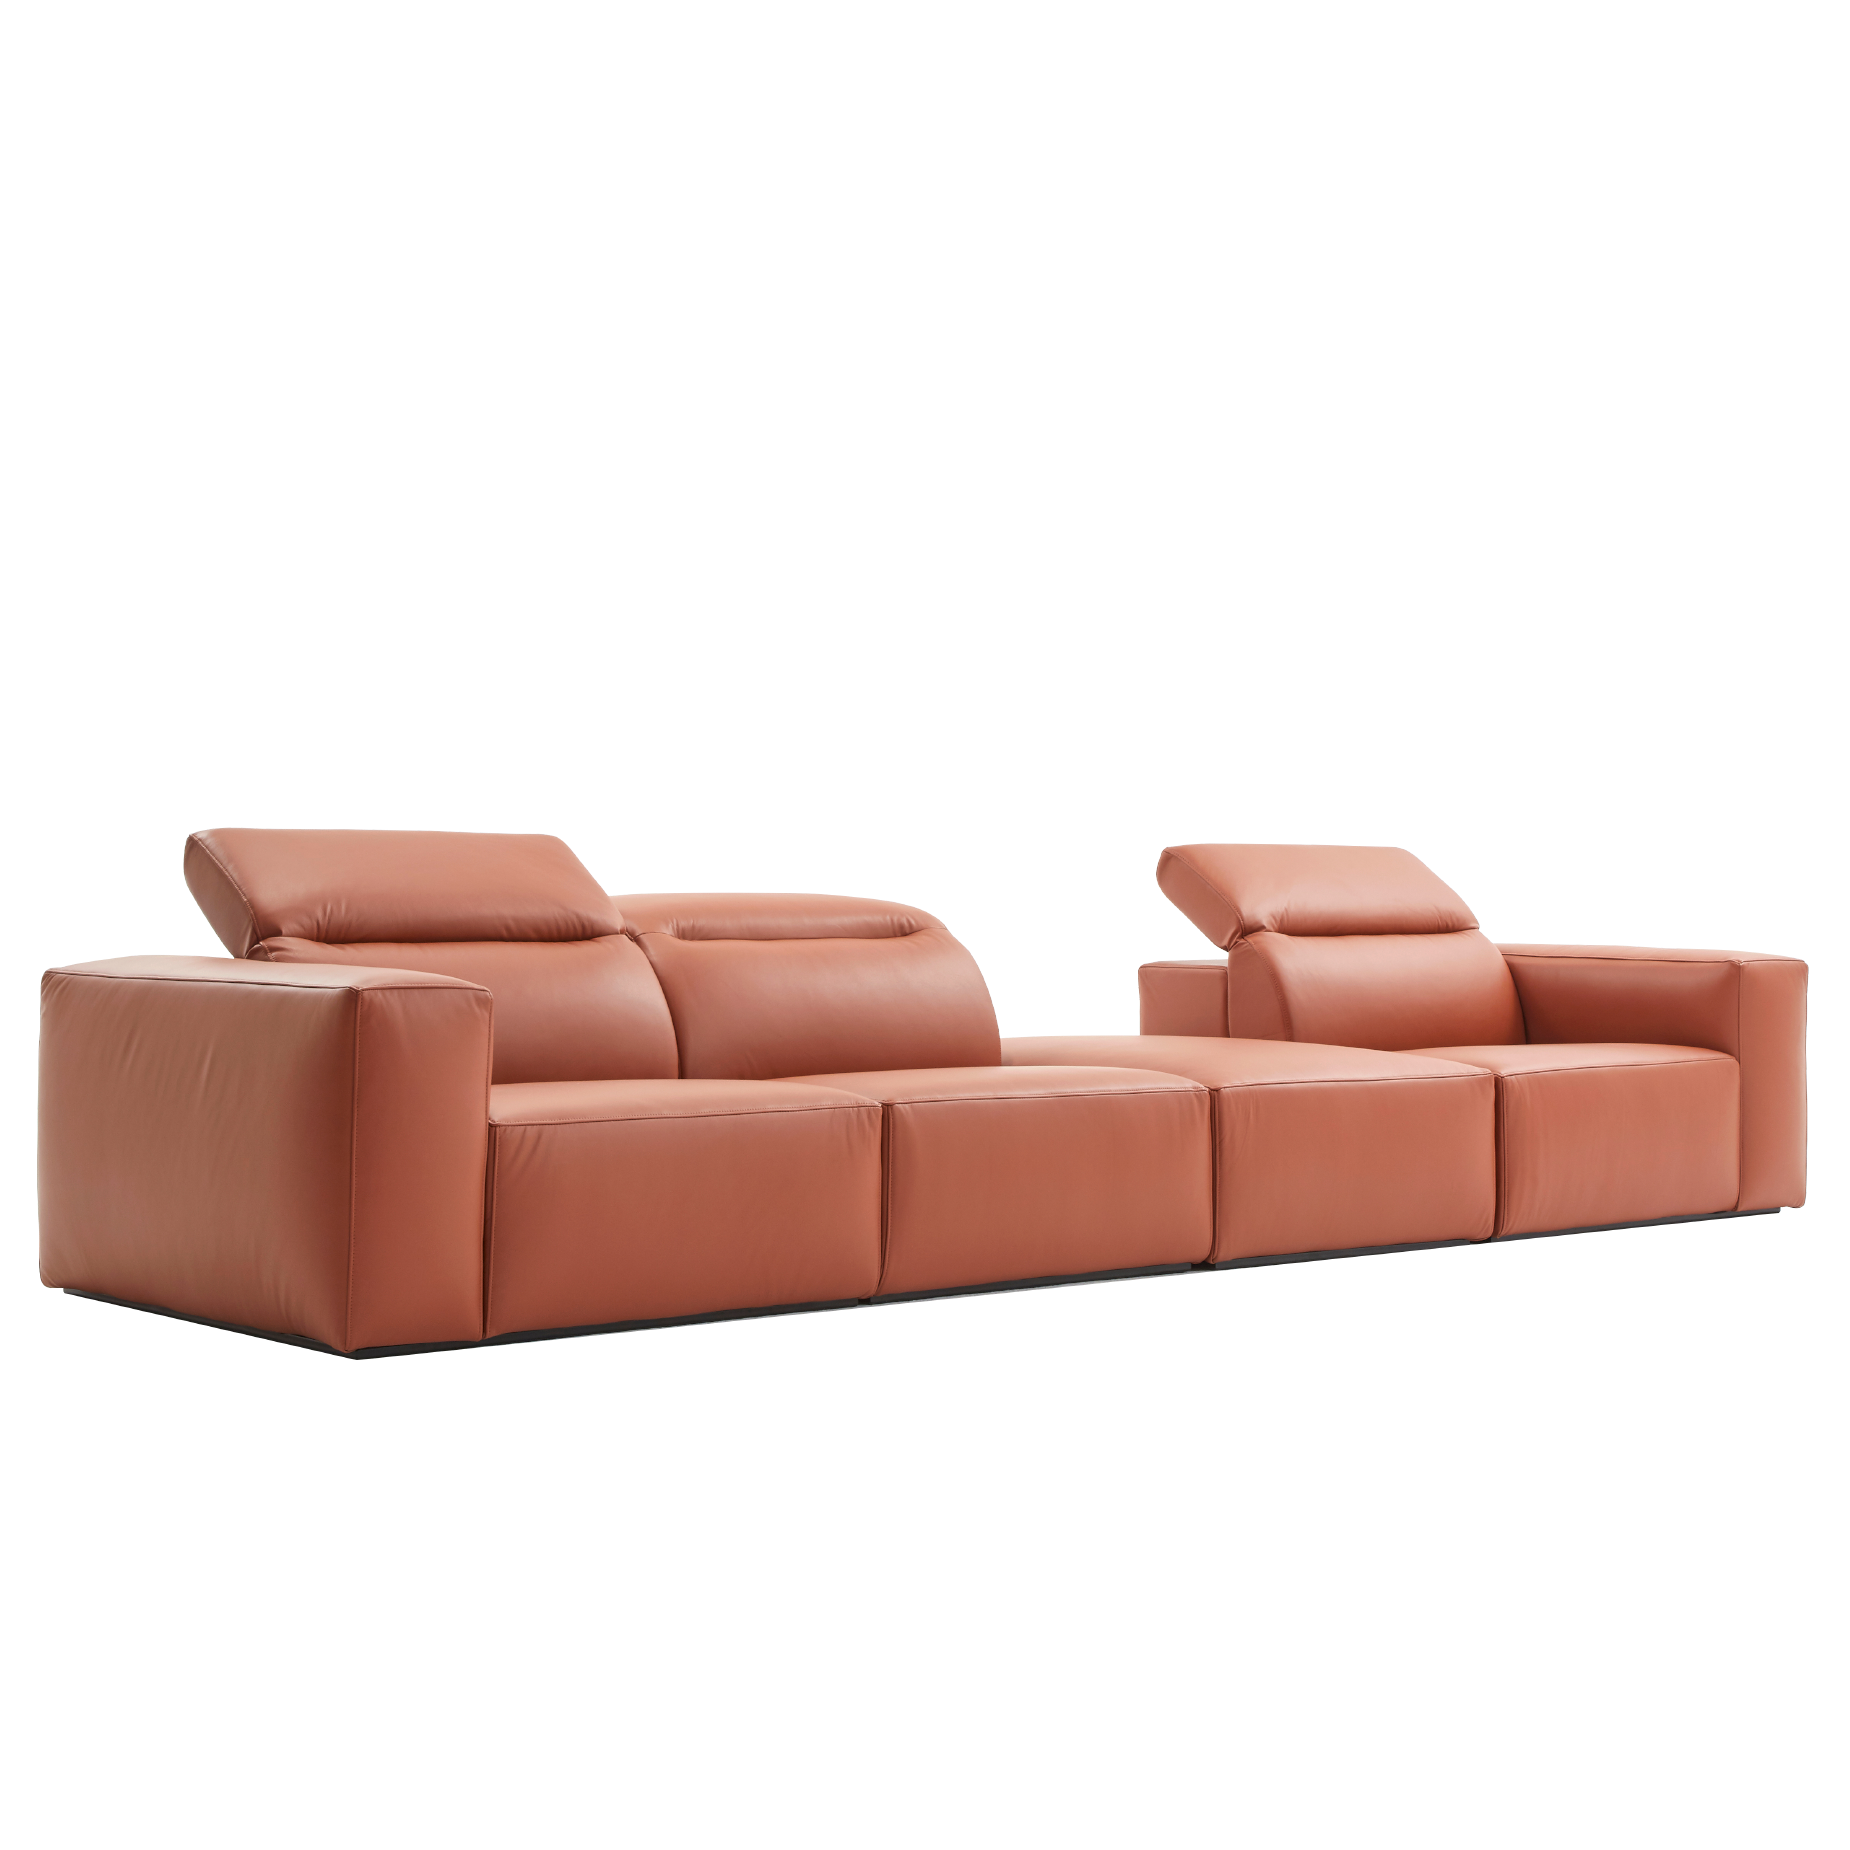 (주)도이치[4주 주문제작]               DOICH ®    PEN1 modular sofa 도이치 펜1 모듈 4인소파+스툴  /(올가죽 사양/ 7개 가죽컬렉션 선택)